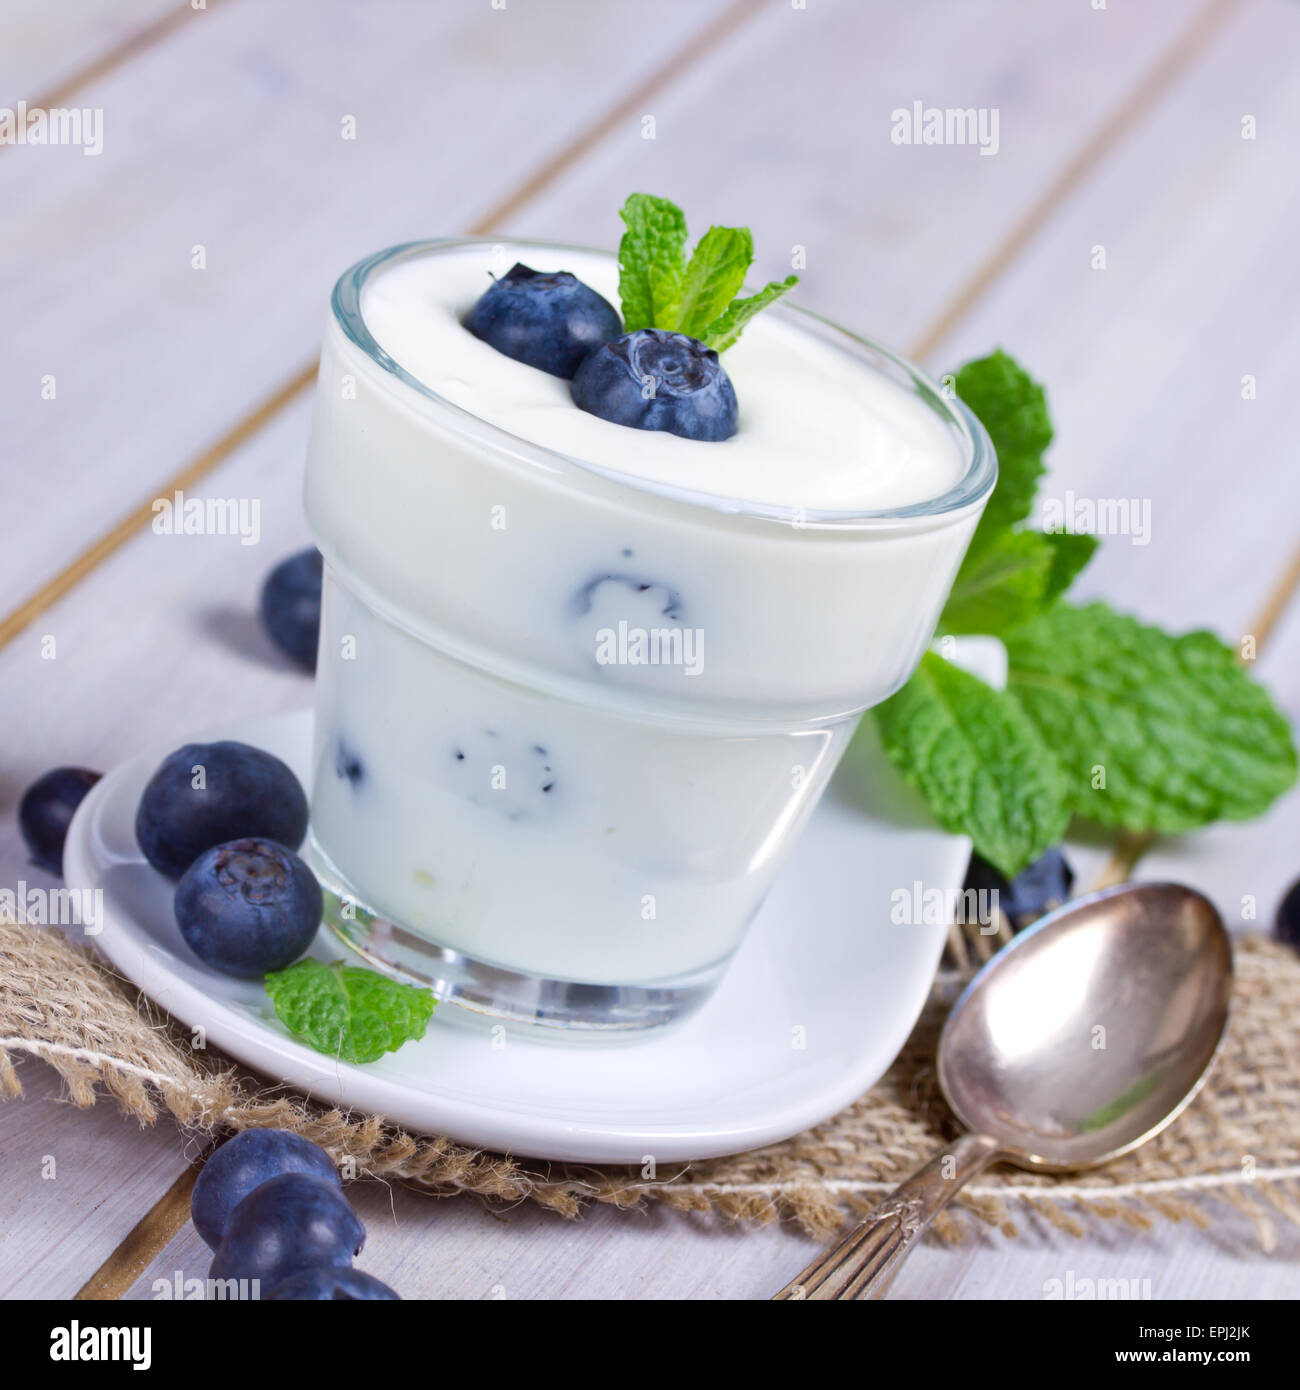 yogurt with blueberries Stock Photo